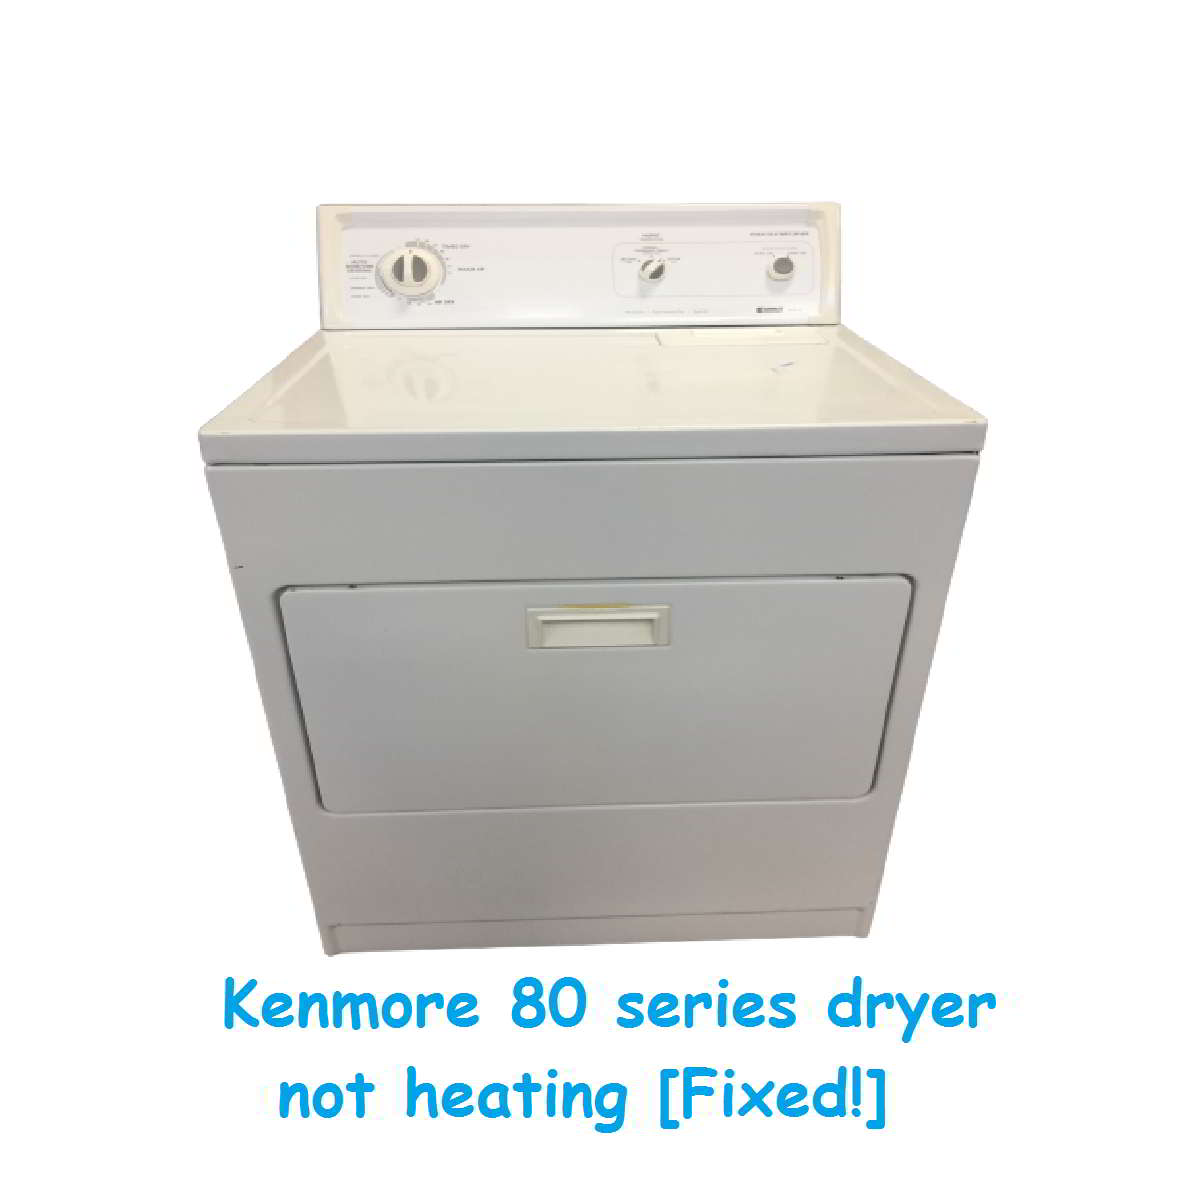 Kenmore 80 series dryer not heating